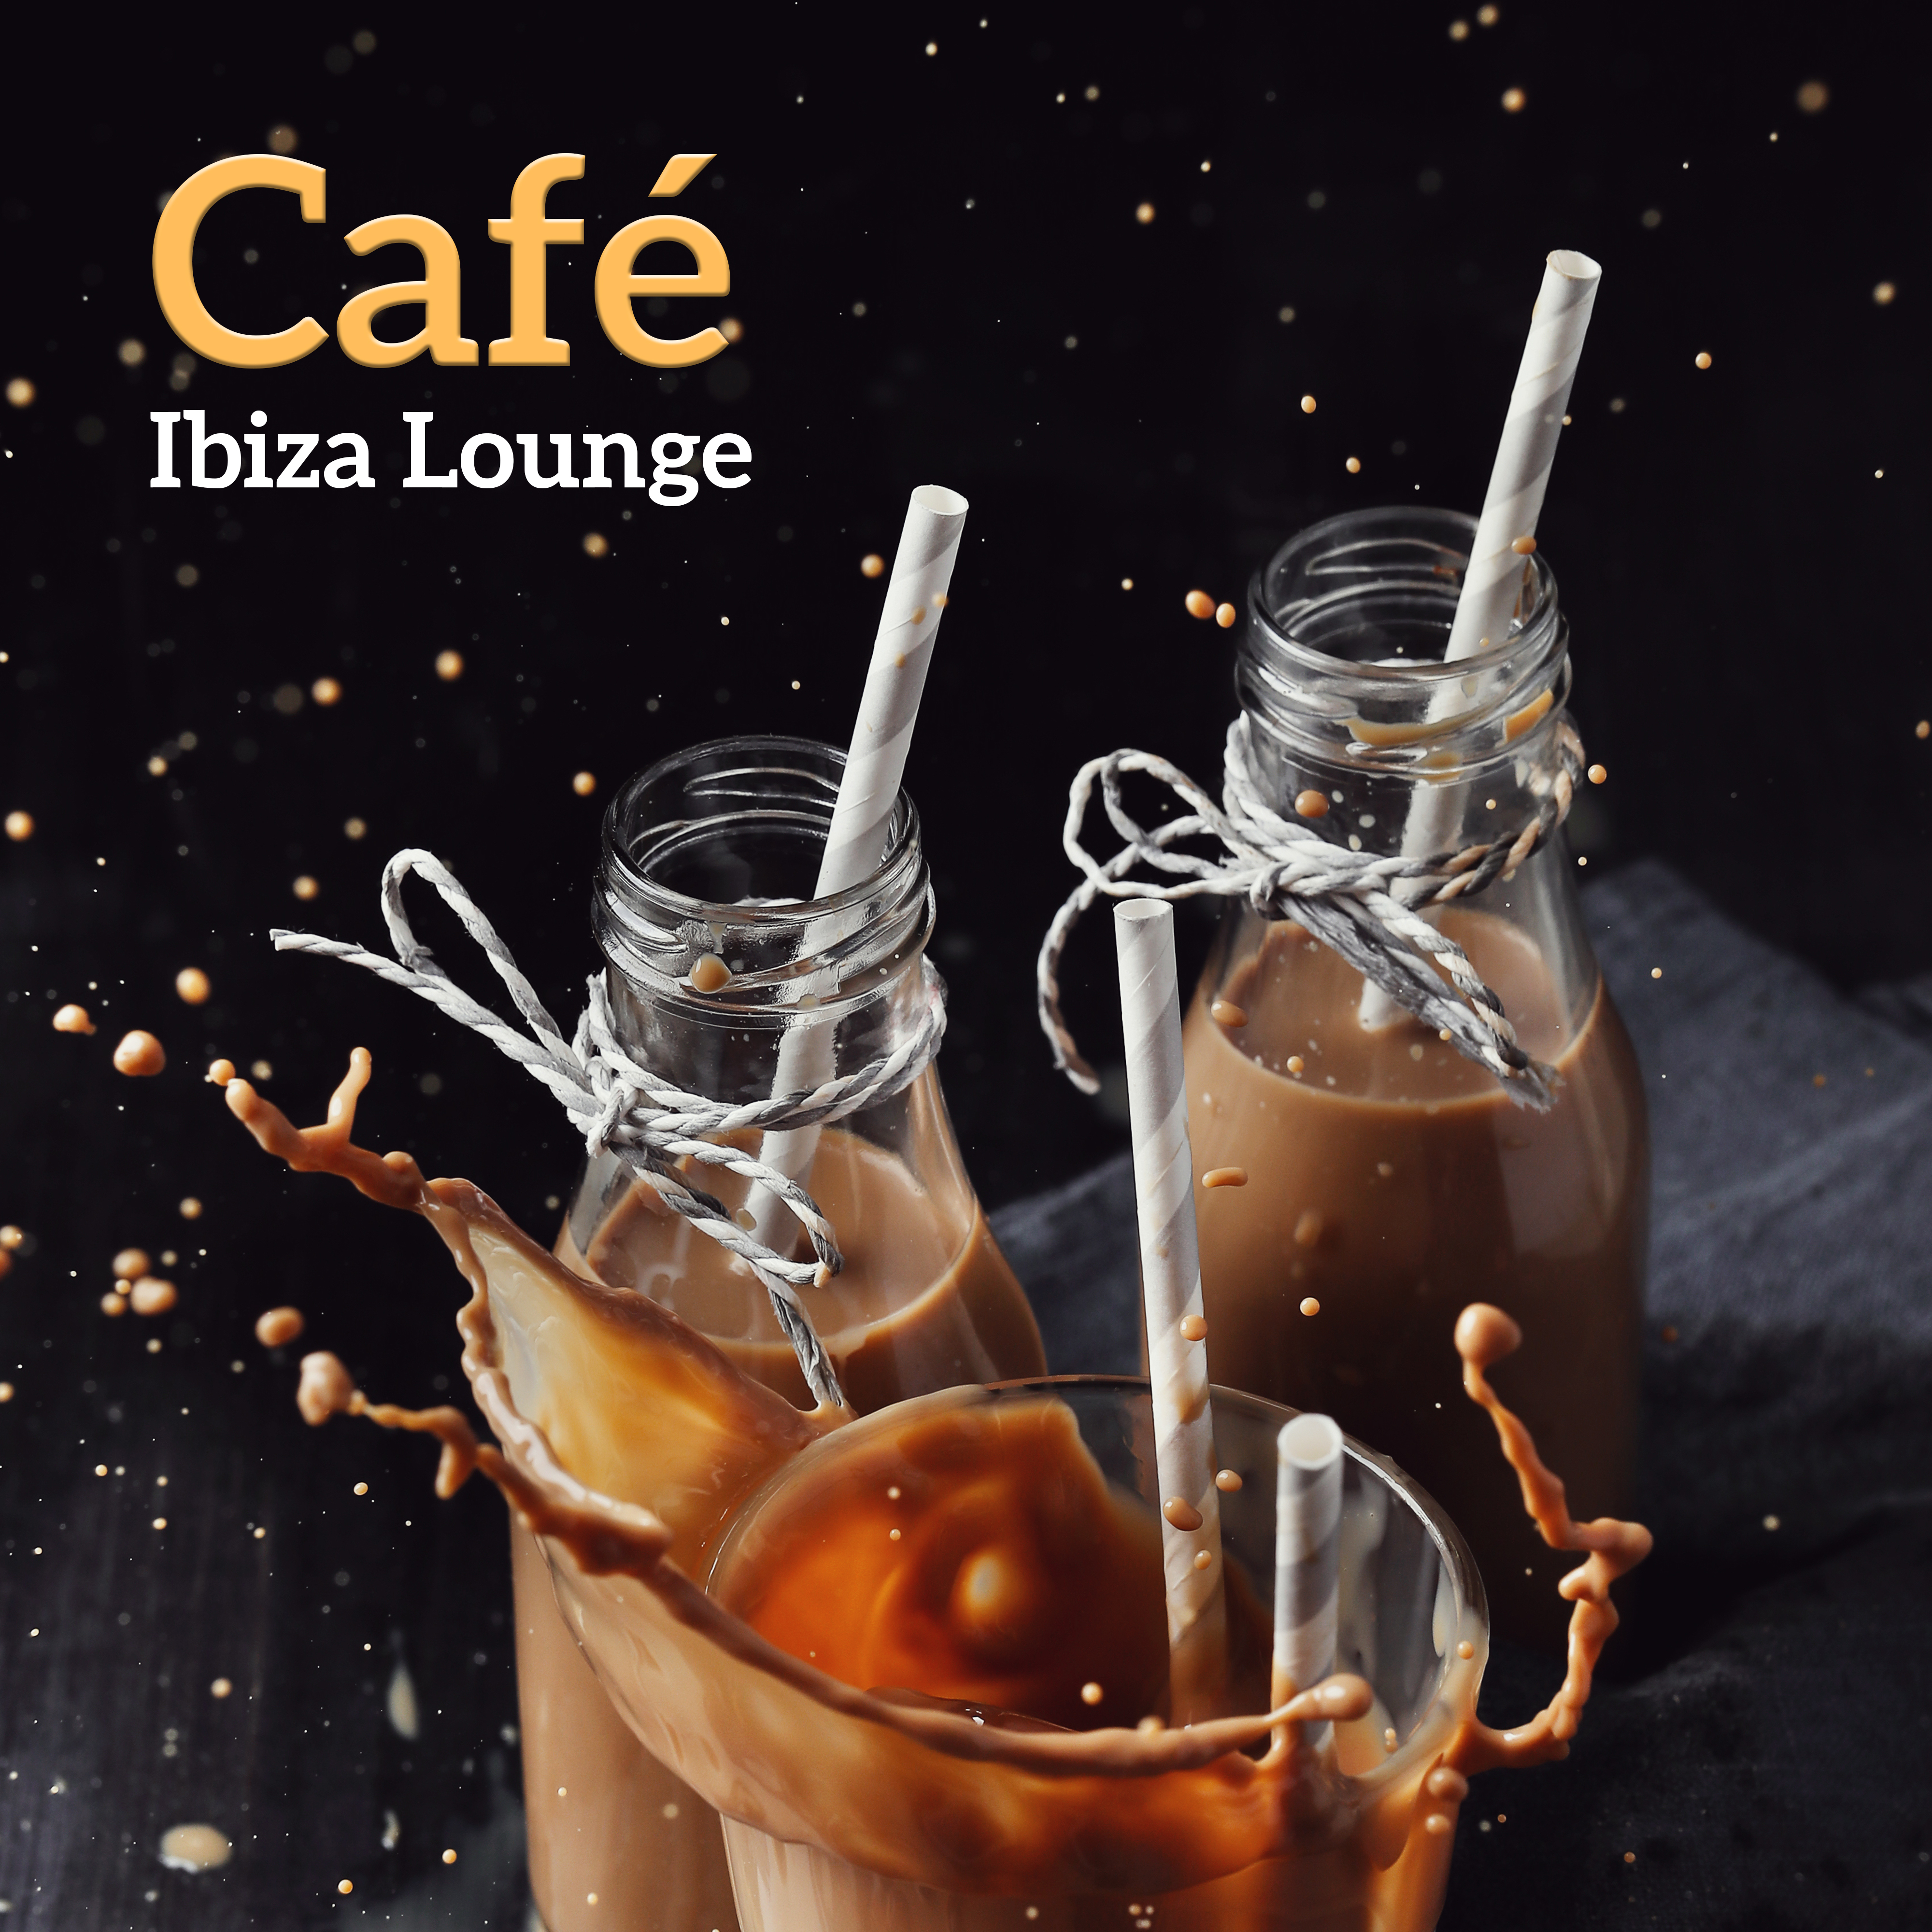 Cafe Ibiza Lounge